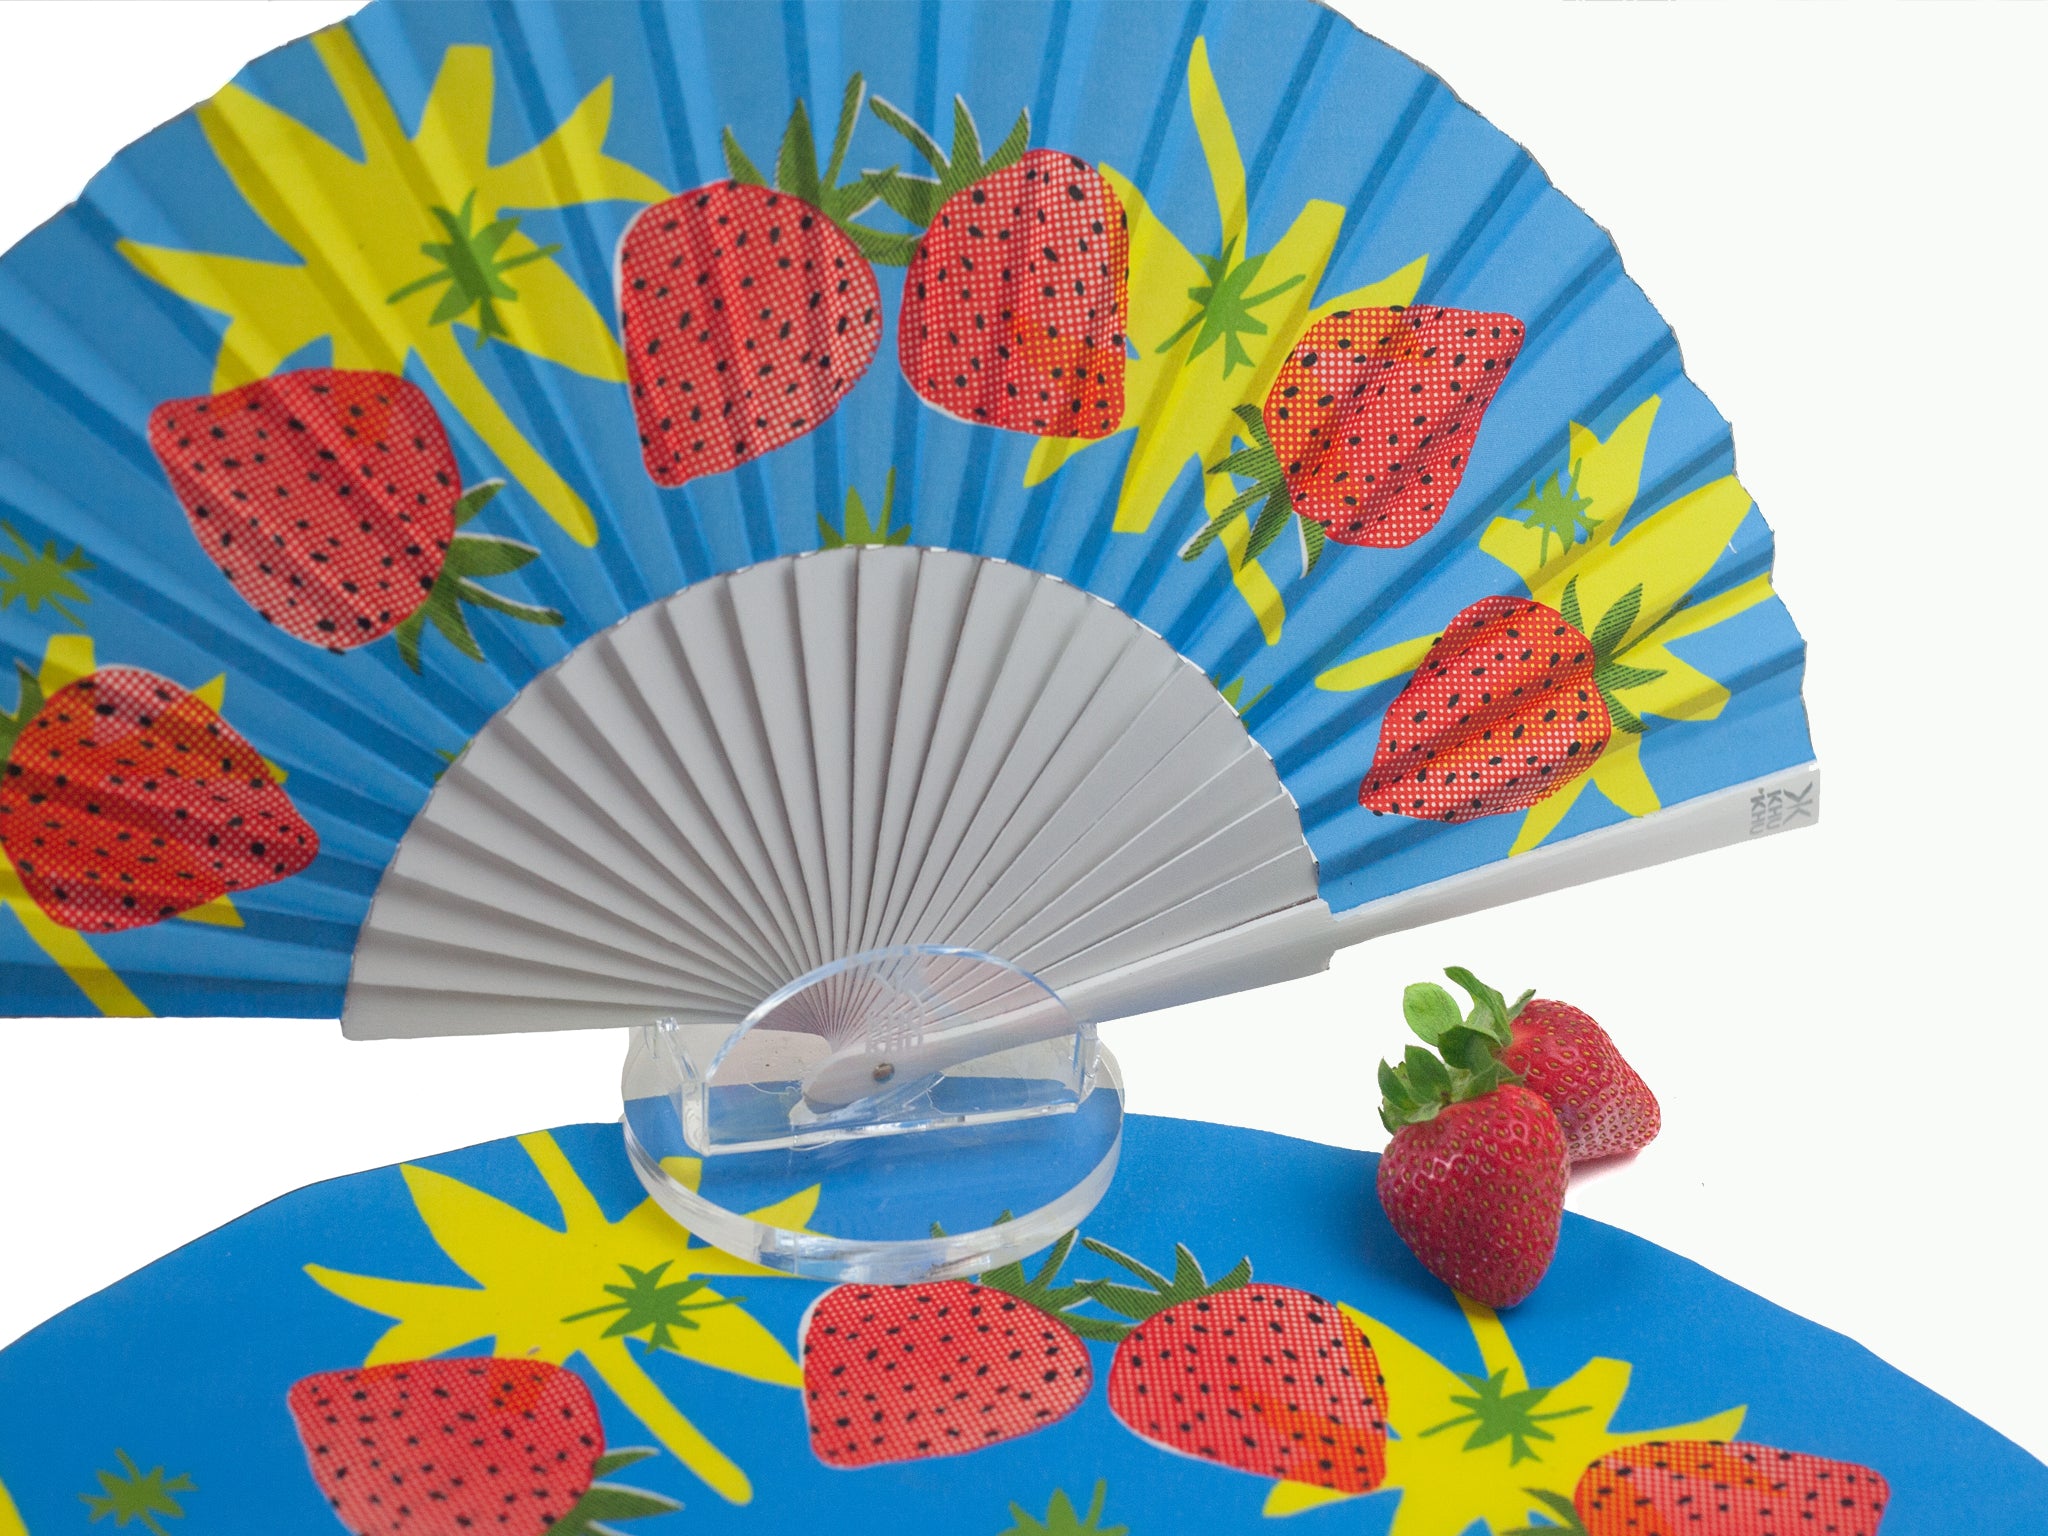 Strawberry Splash Hand-fan